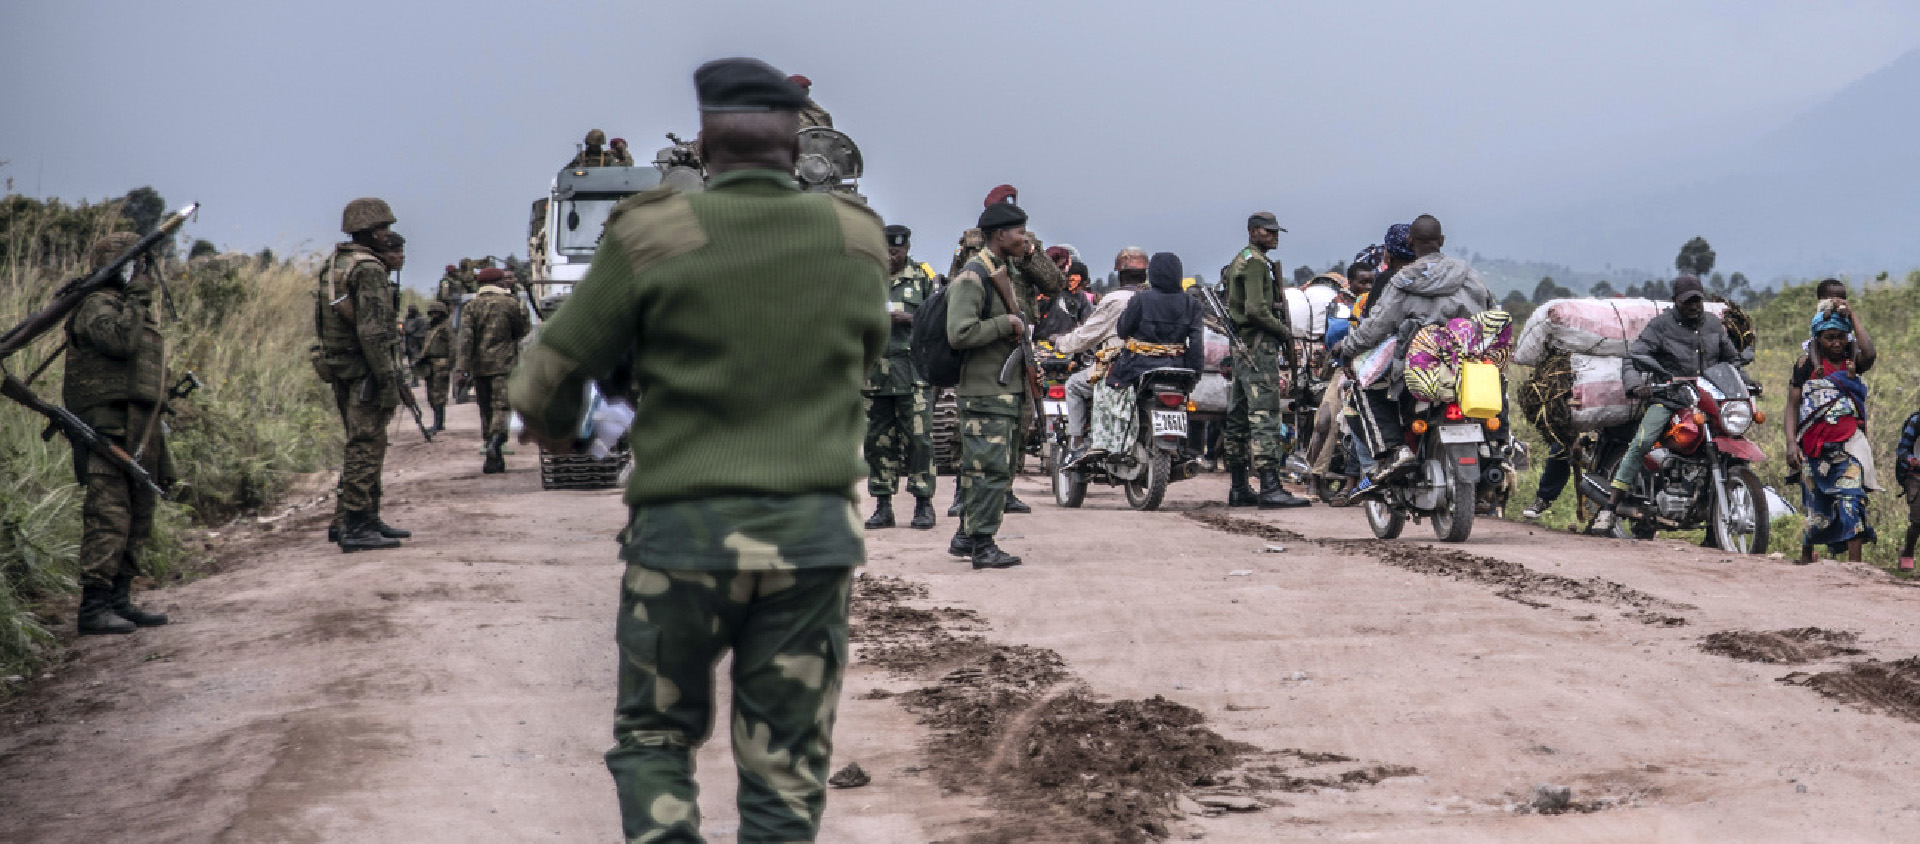 La sécurité dégradée dans l’est de la RDC, les menaces d’attentat visant le pape François expliqueraient aussi le report du voyage du pape en RDC | © Keystone/AP Photo/Moses Sawasawa